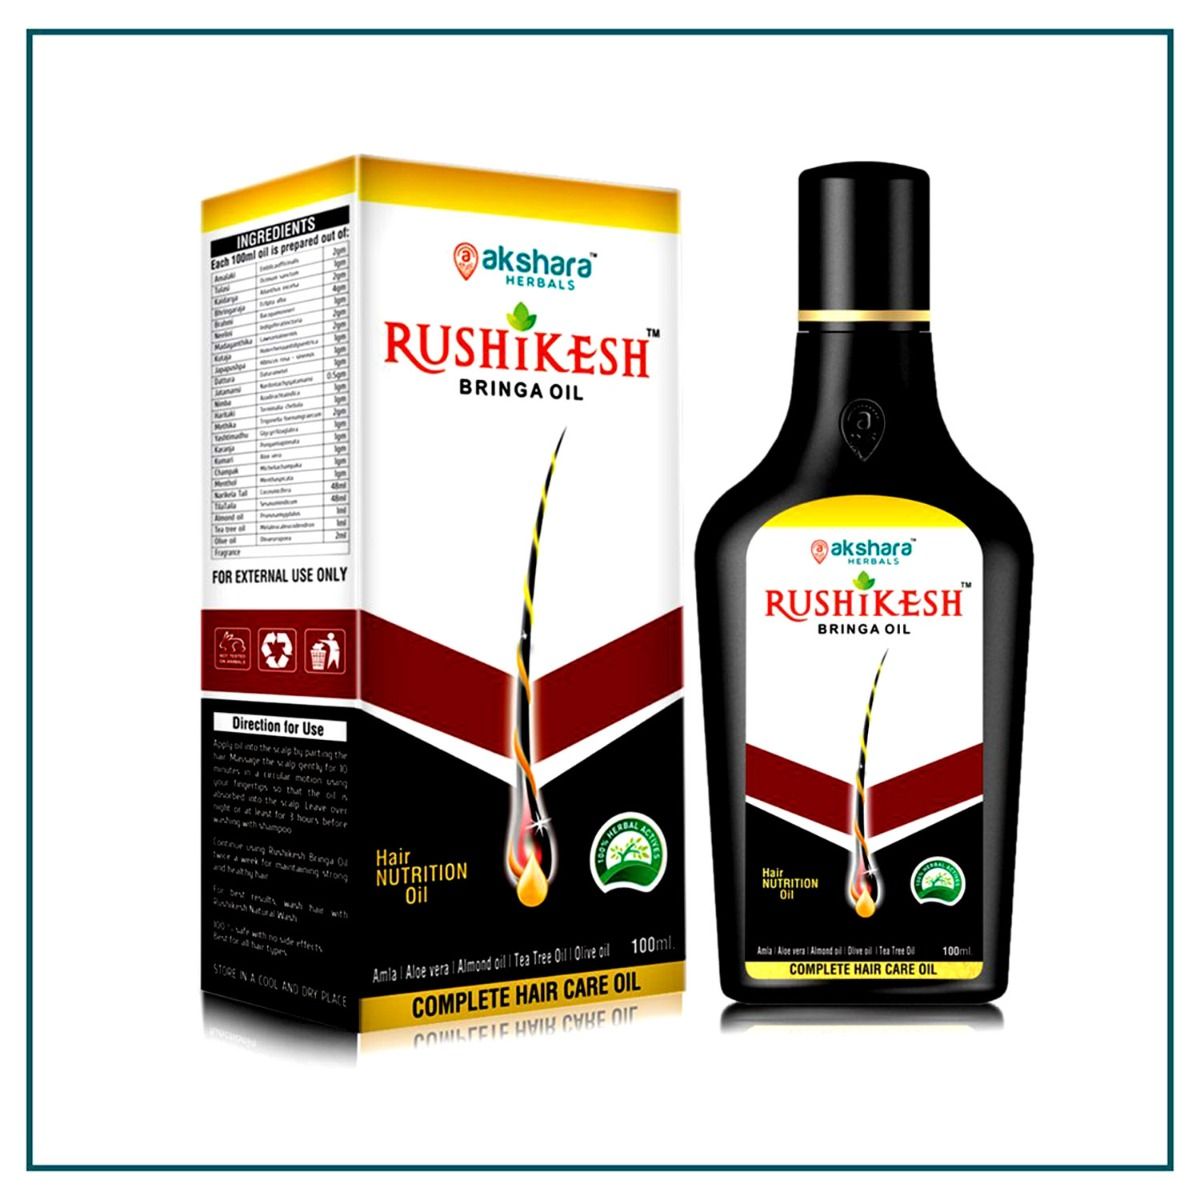 Buy Rushikesh Bringa Oil, 100 ml Online